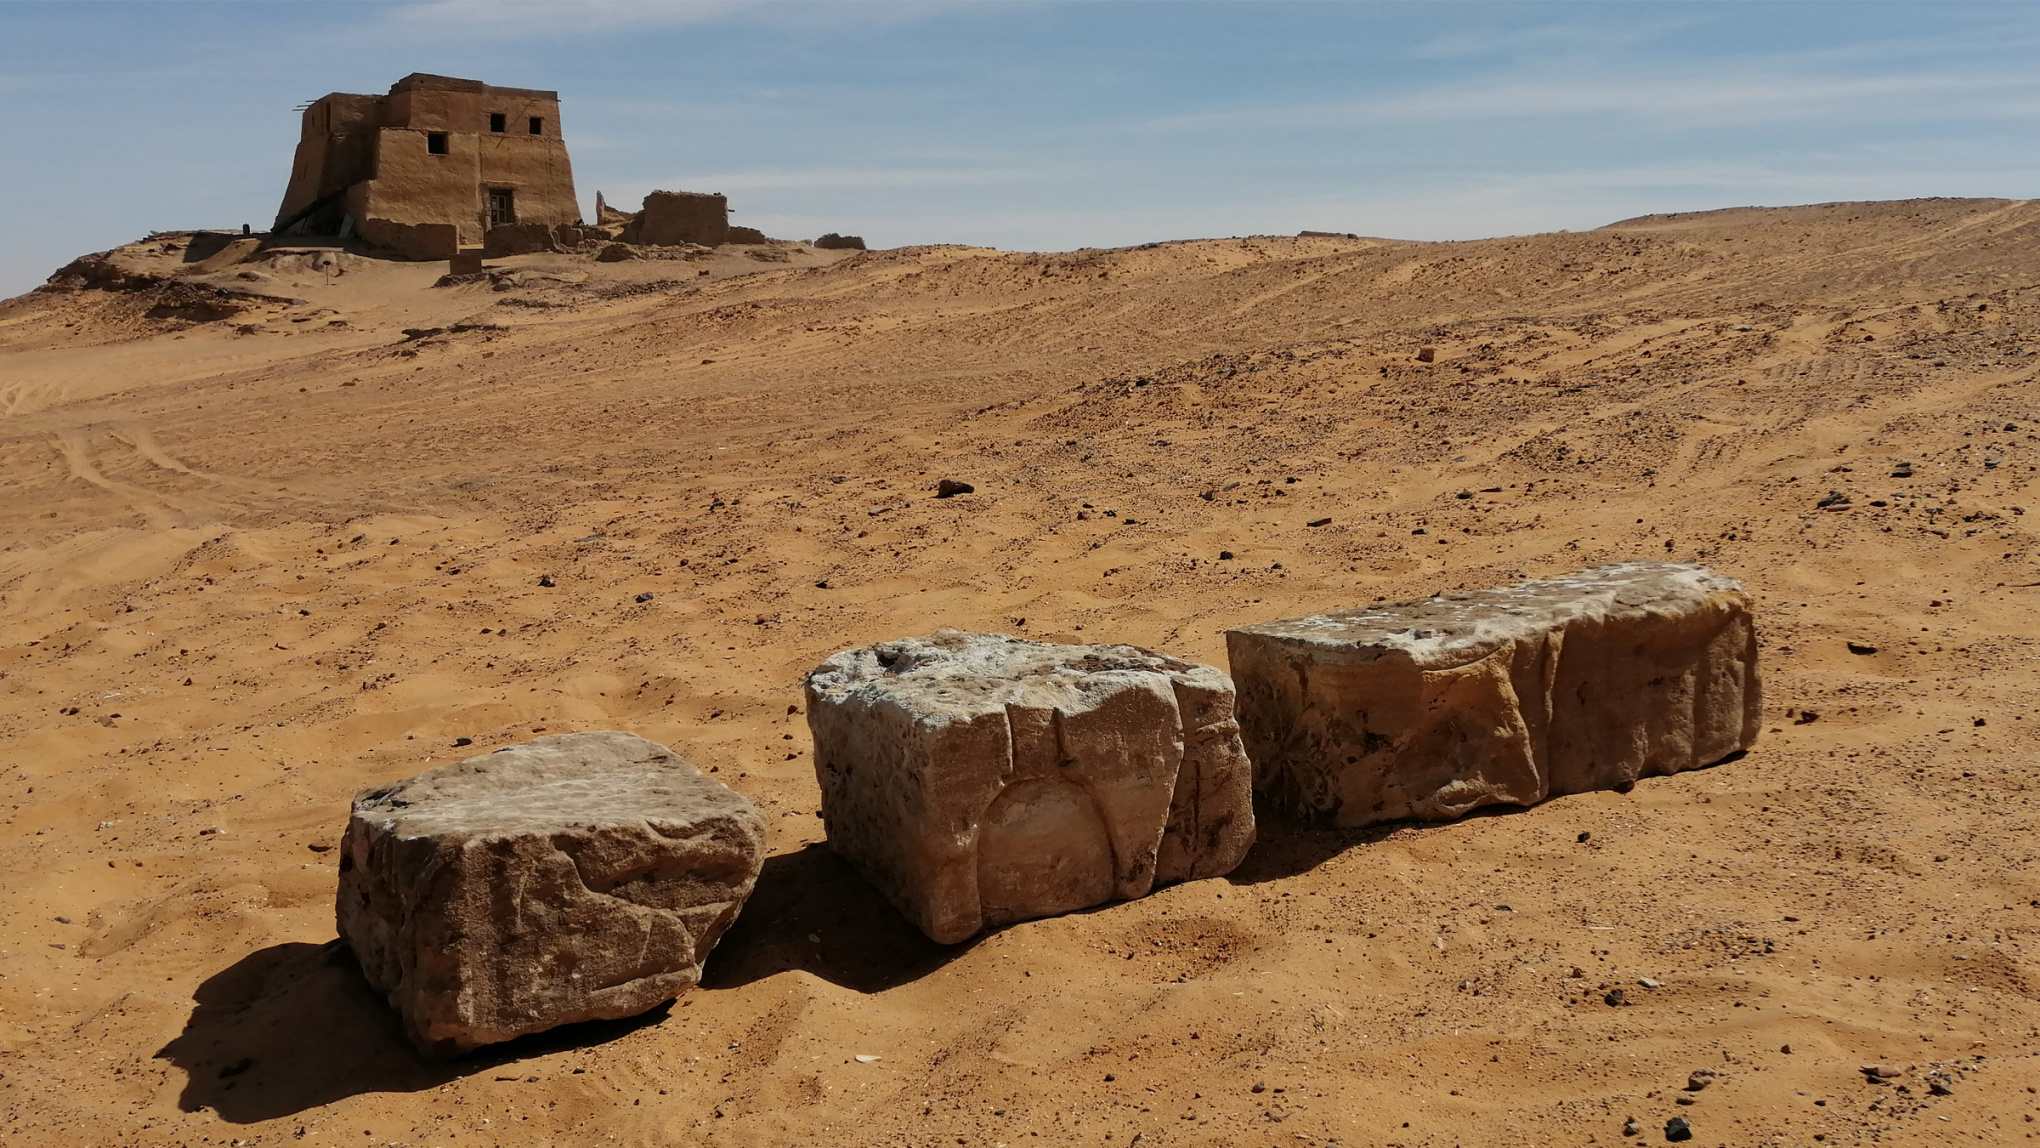 Blokki antiki bi skrizzjonijiet ġeroglifiċi ġew skoperti fis-Sudan.